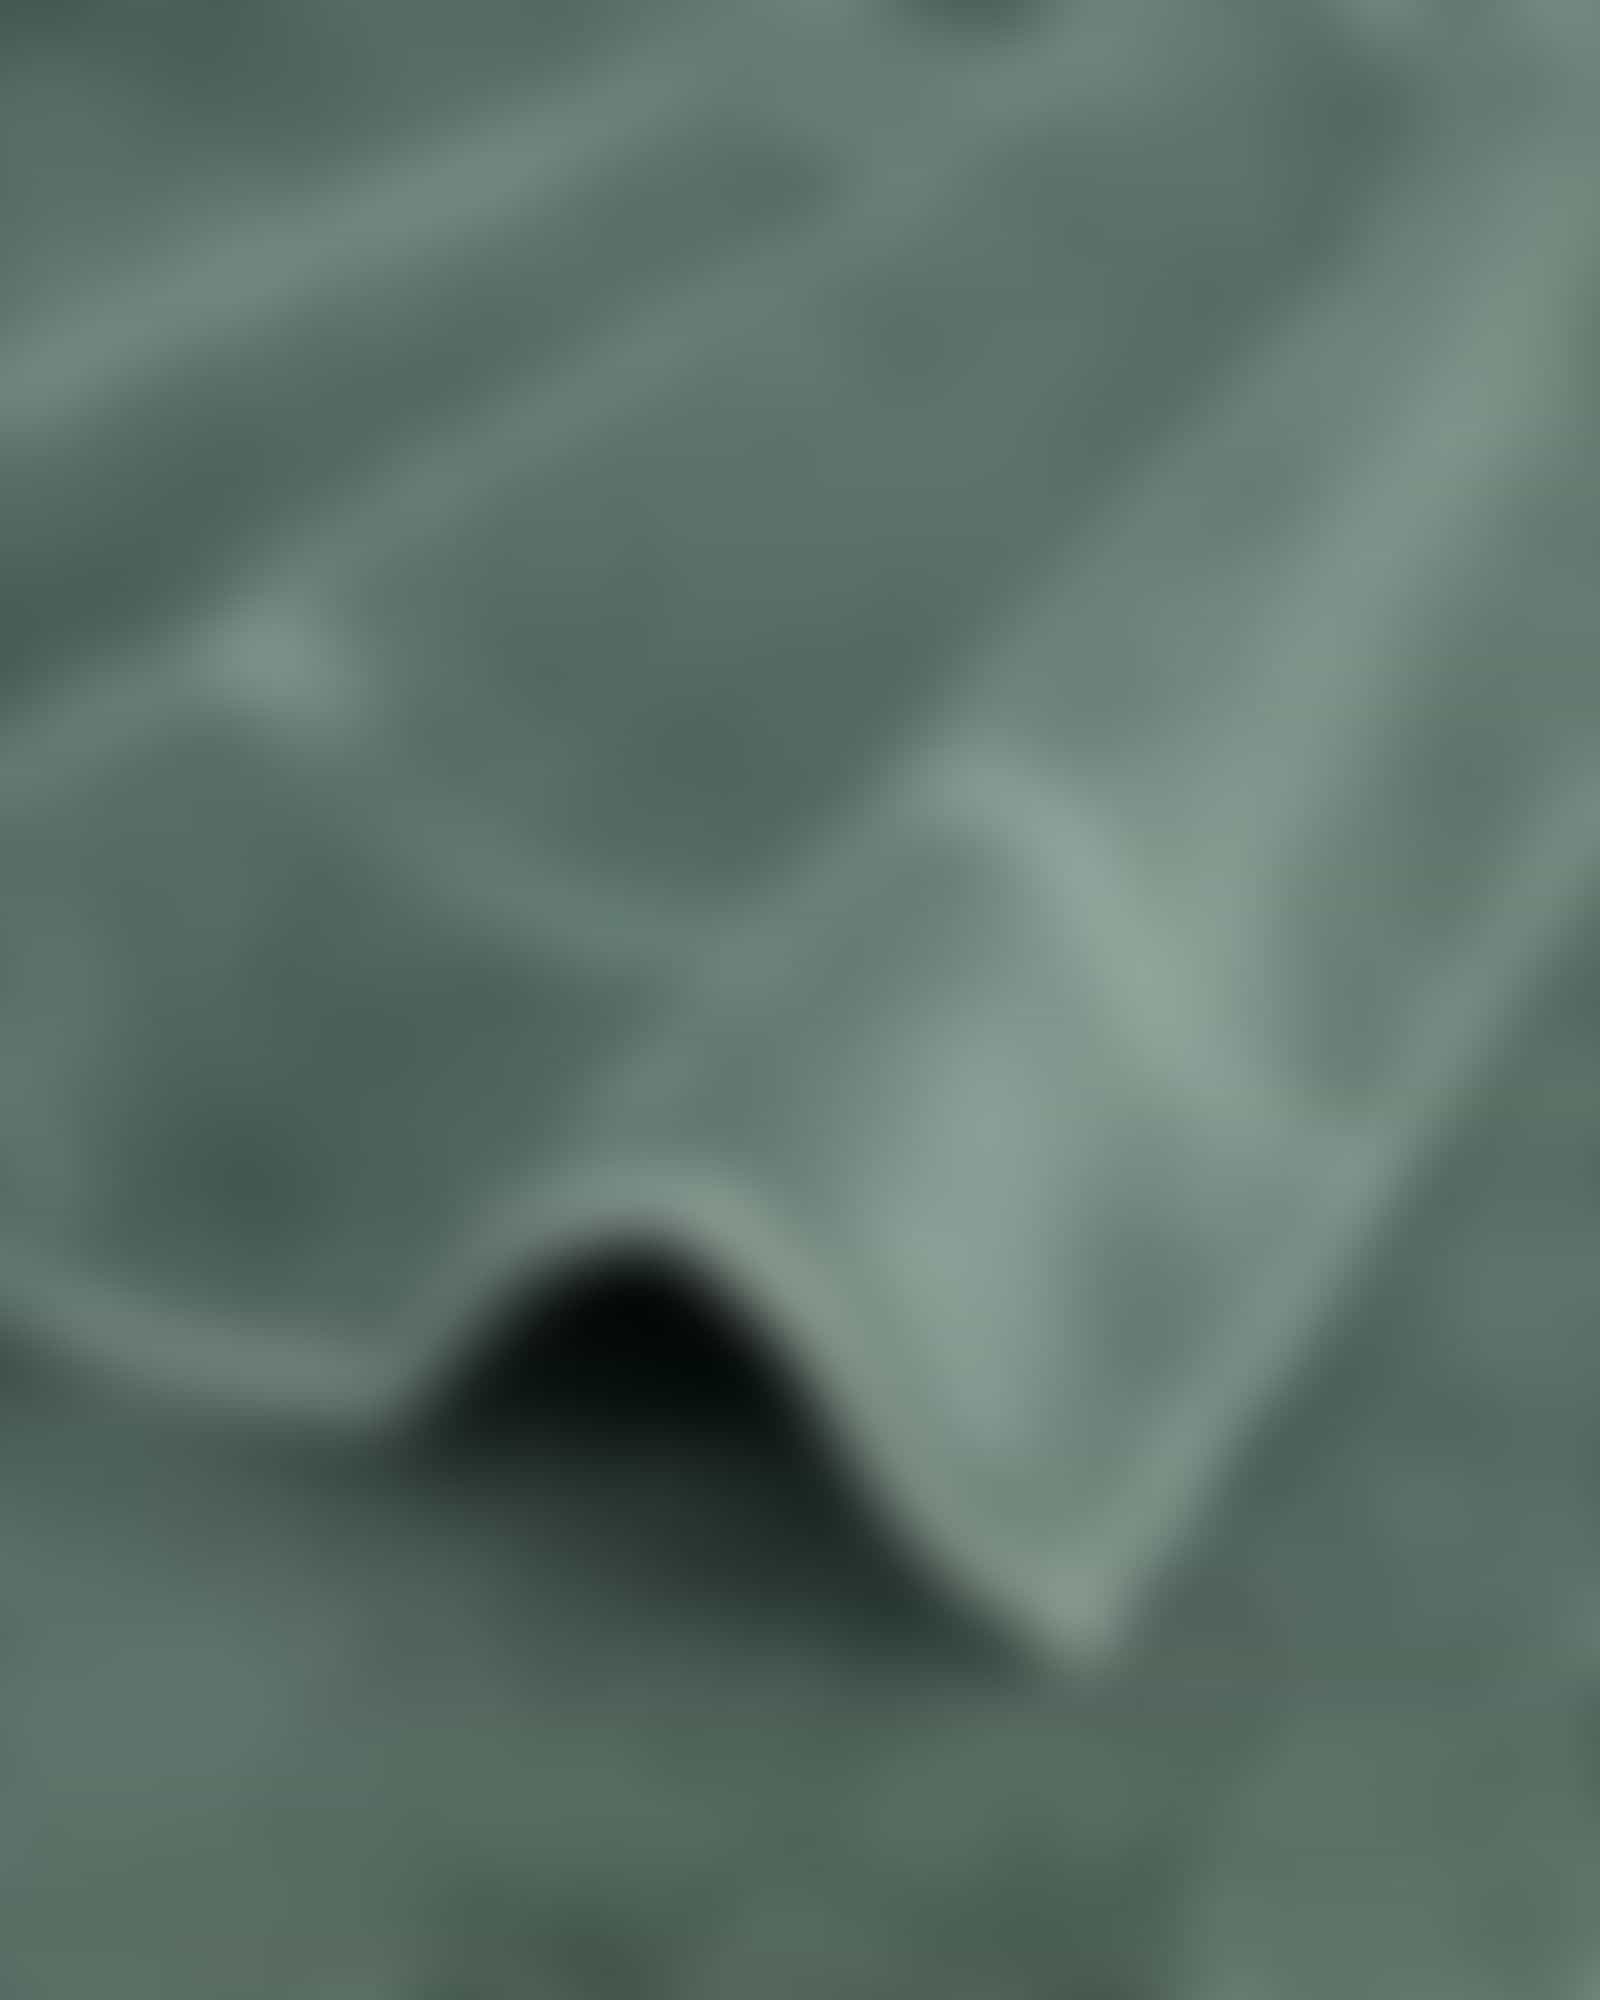 Vossen Handtücher Belief - Farbe: sage - 7520 - Handtuch 50x100 cm